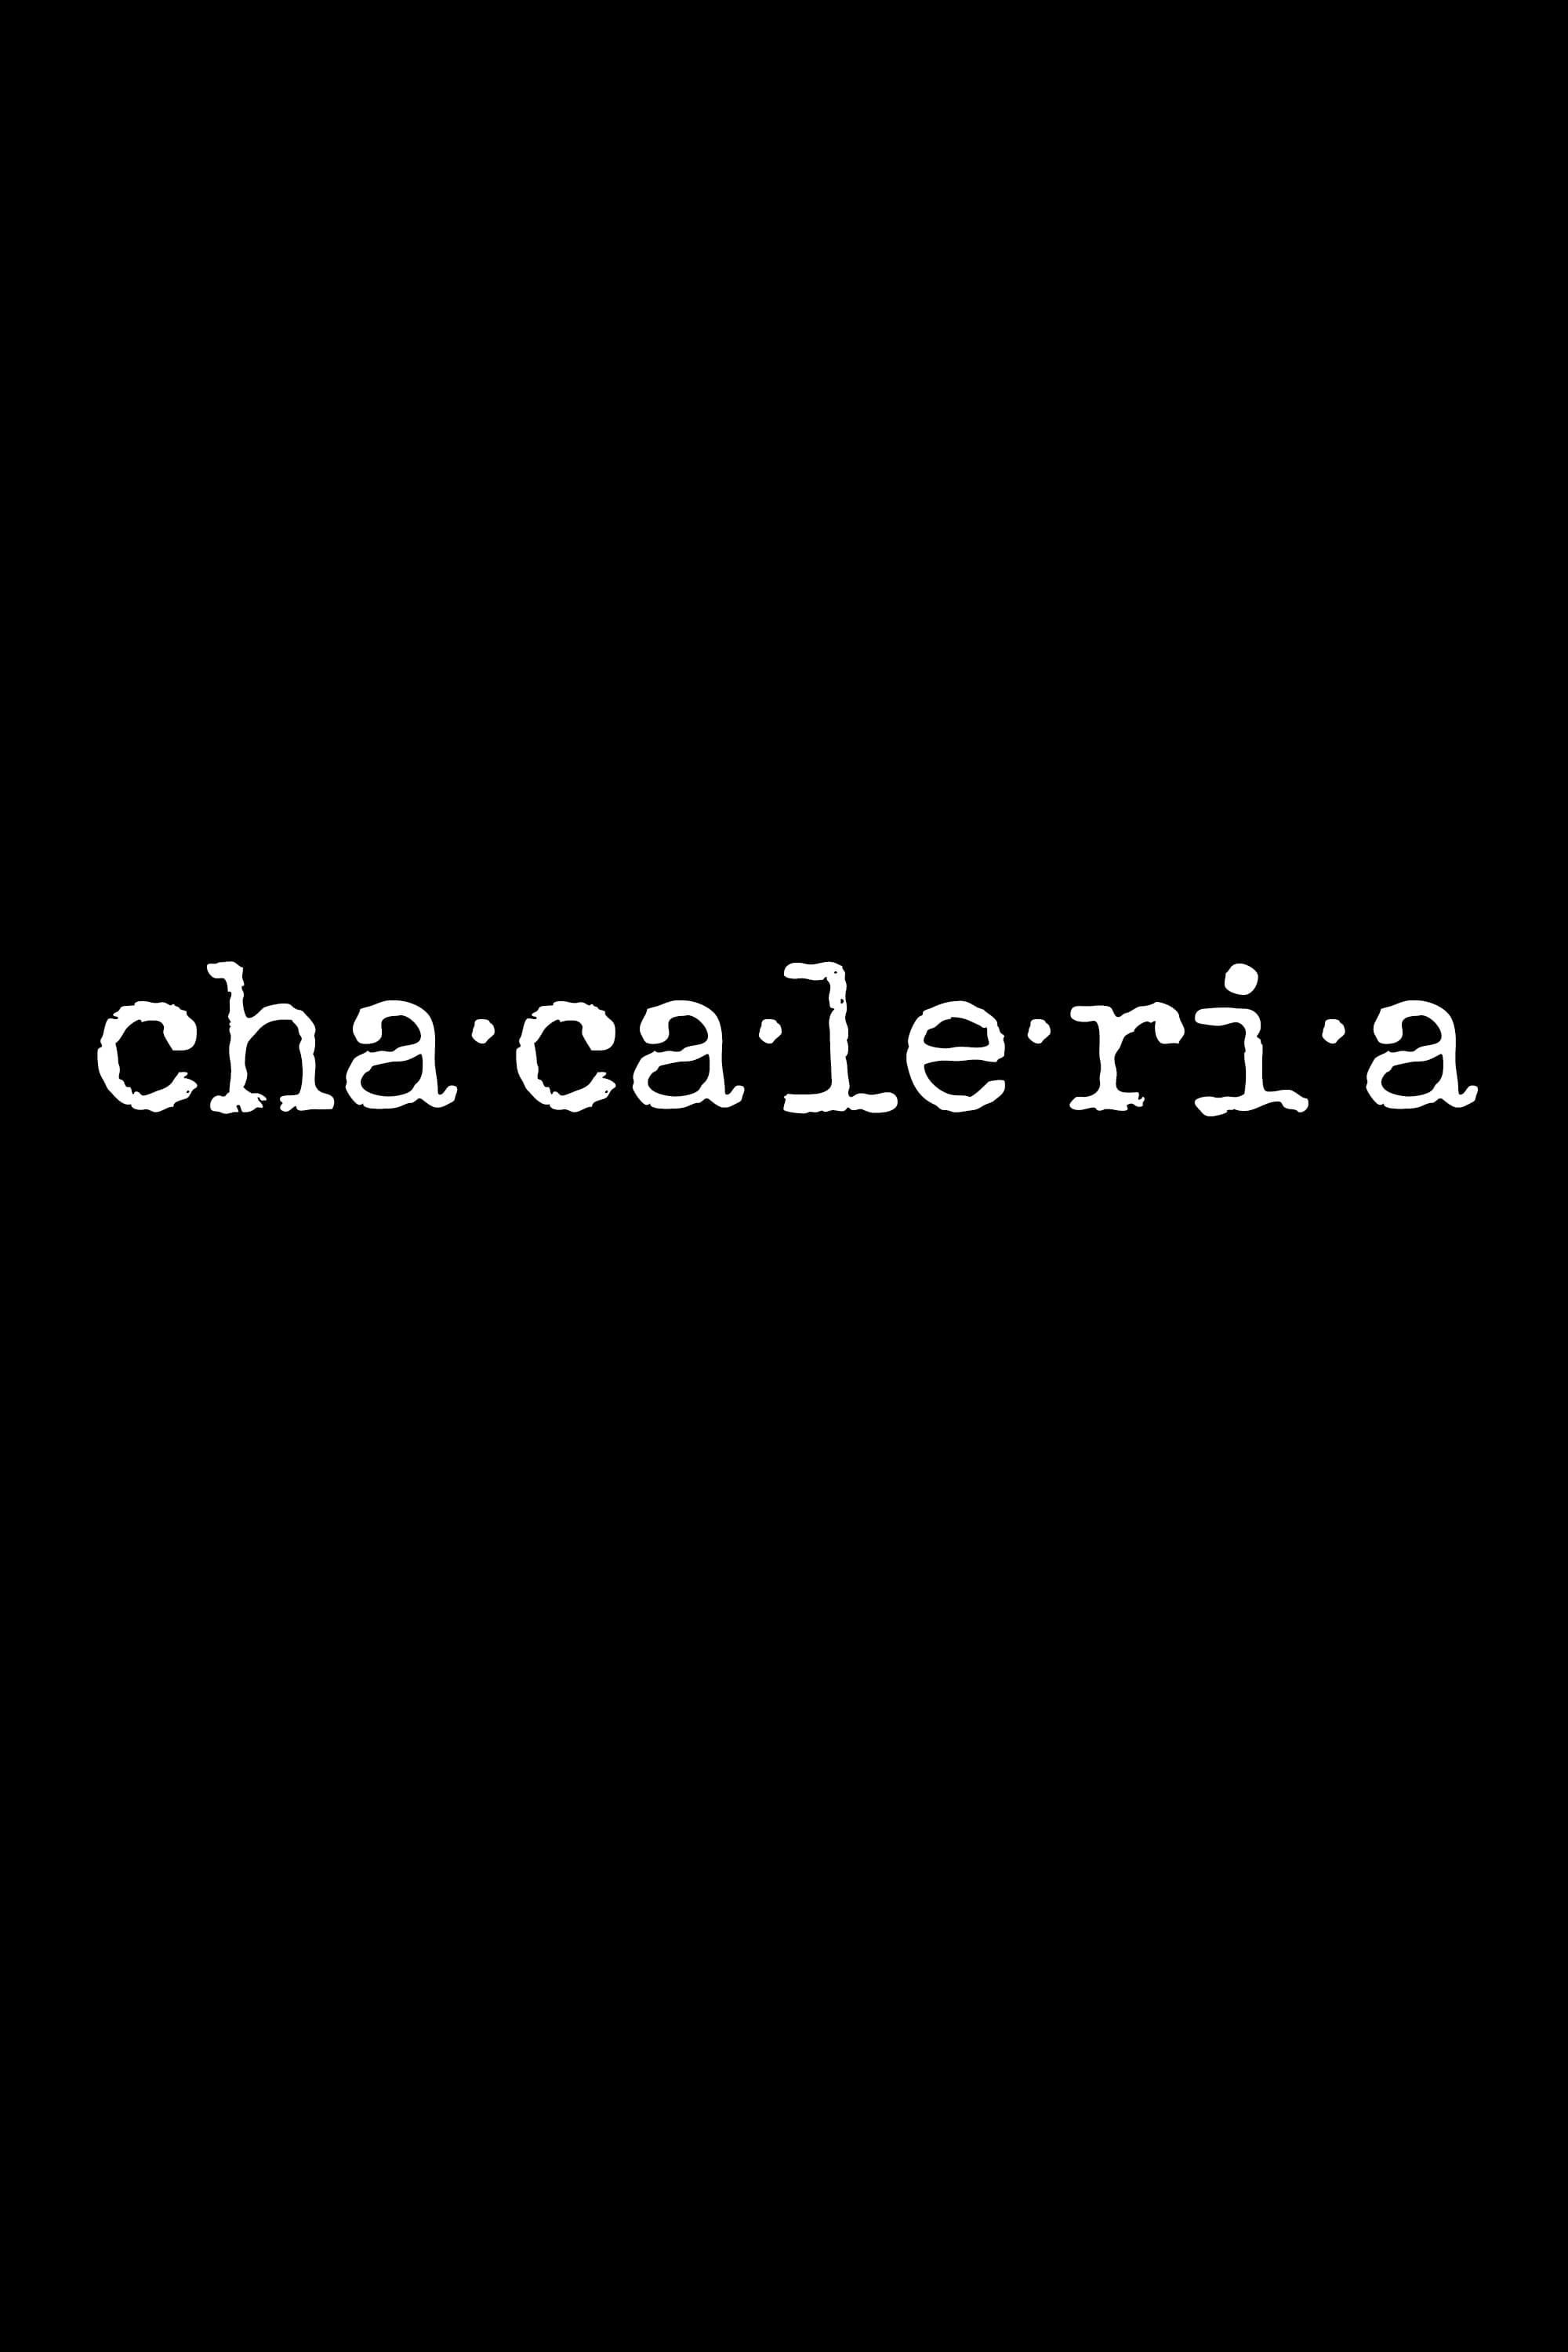 Chacaleria